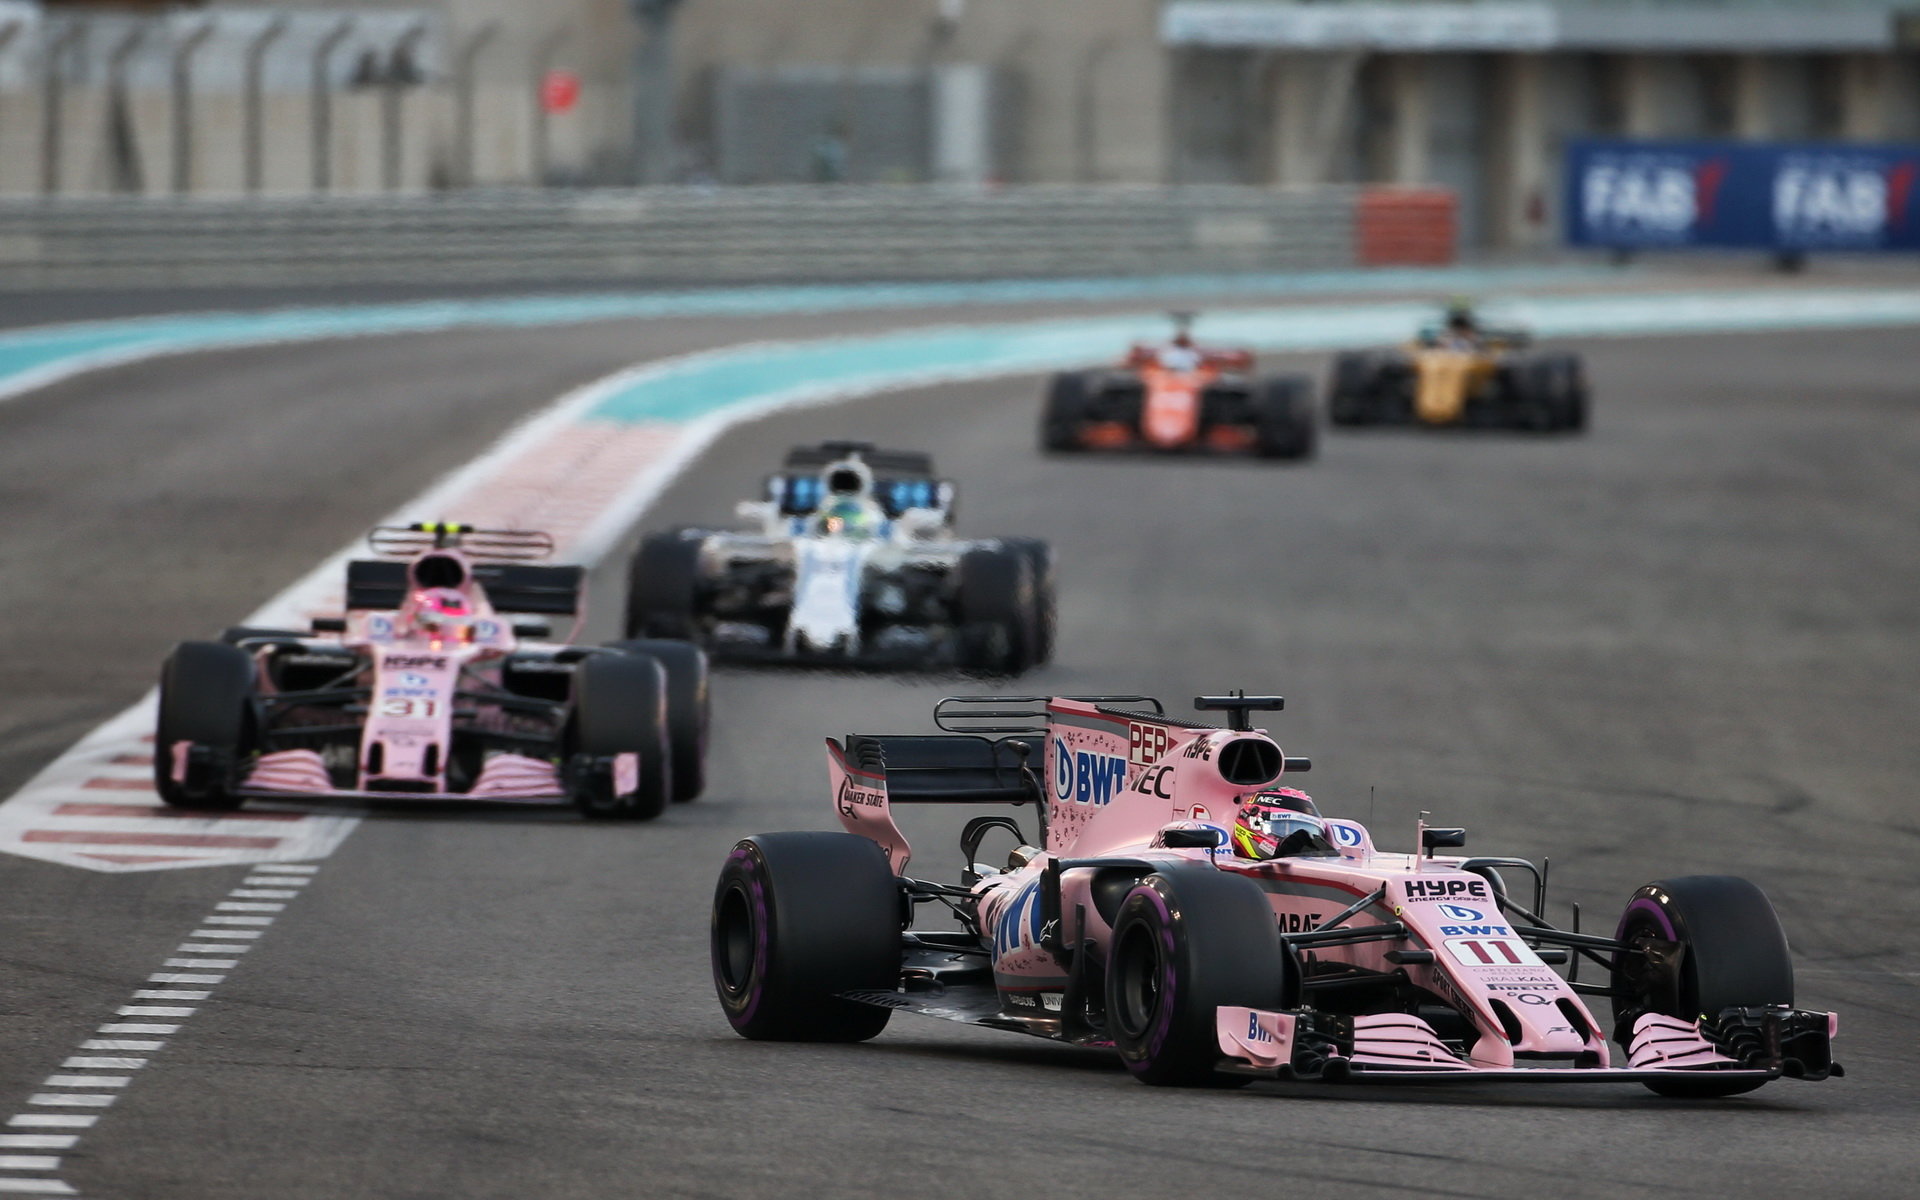 Force India by chtěla i letos minimálně udržet čtvrté místo mezi konstruktéry, soupeři podle ní však budou silnější